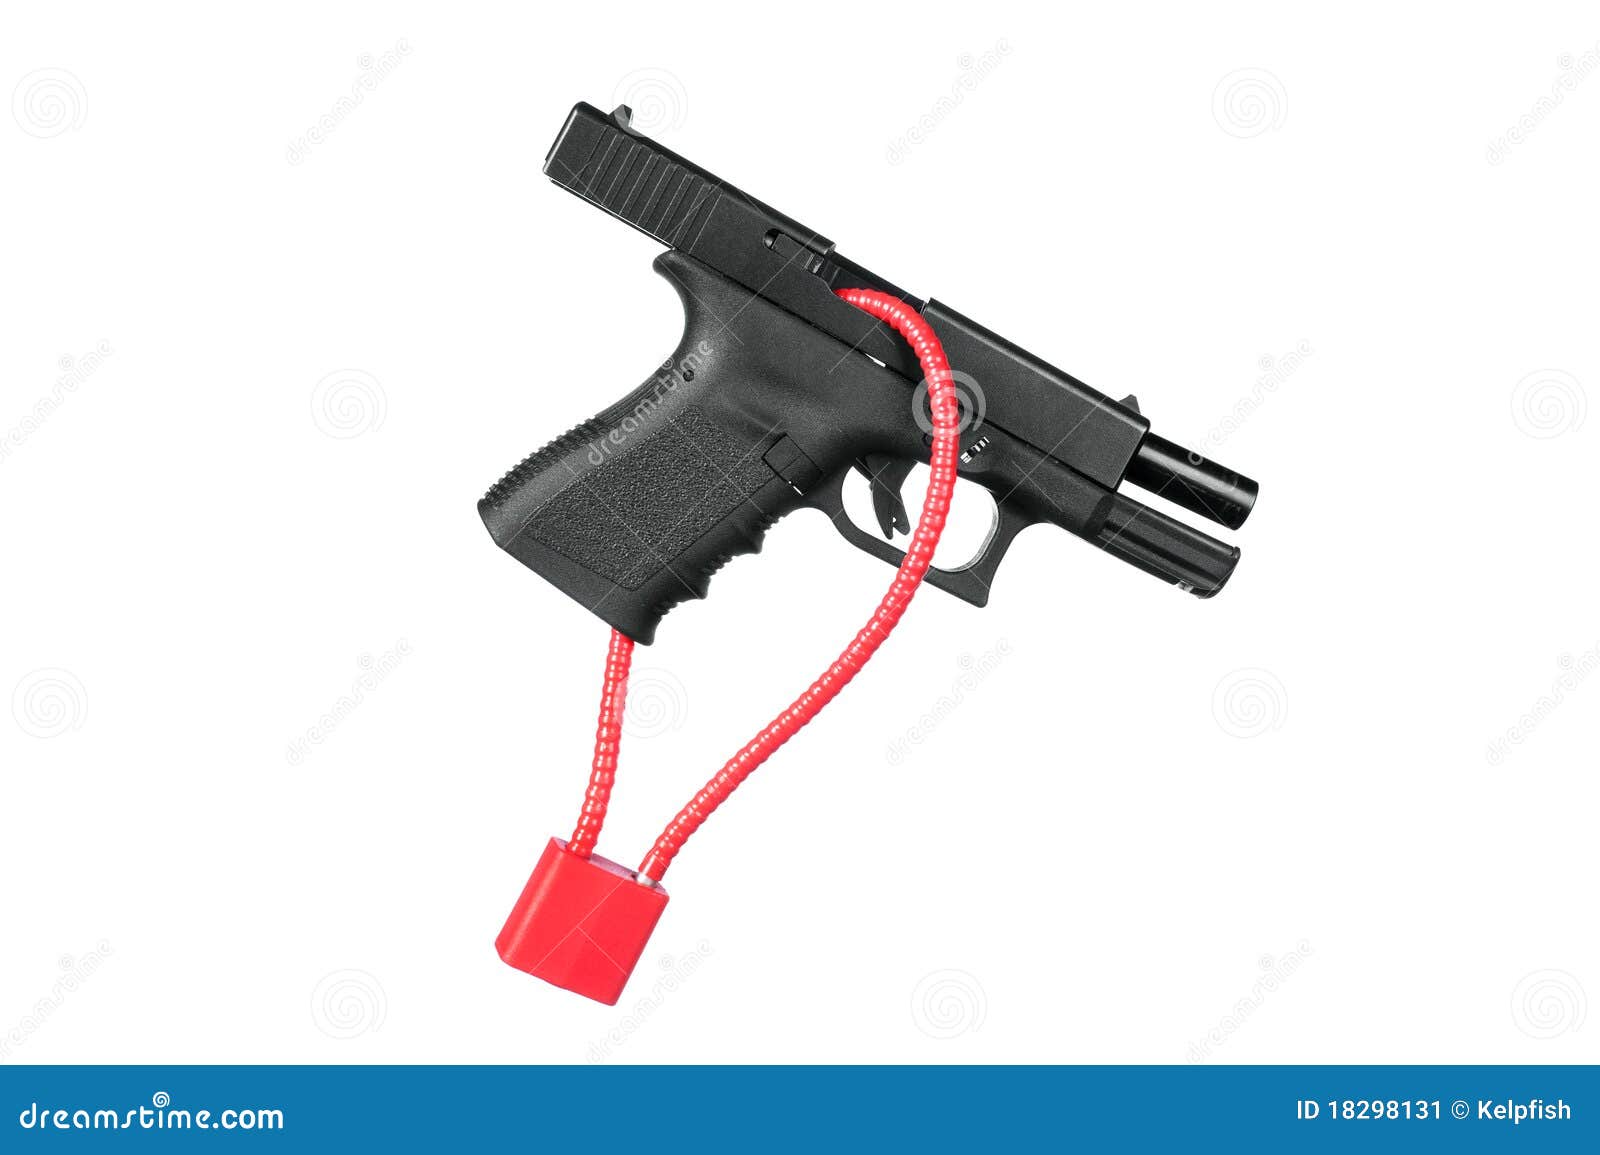 locked firearm